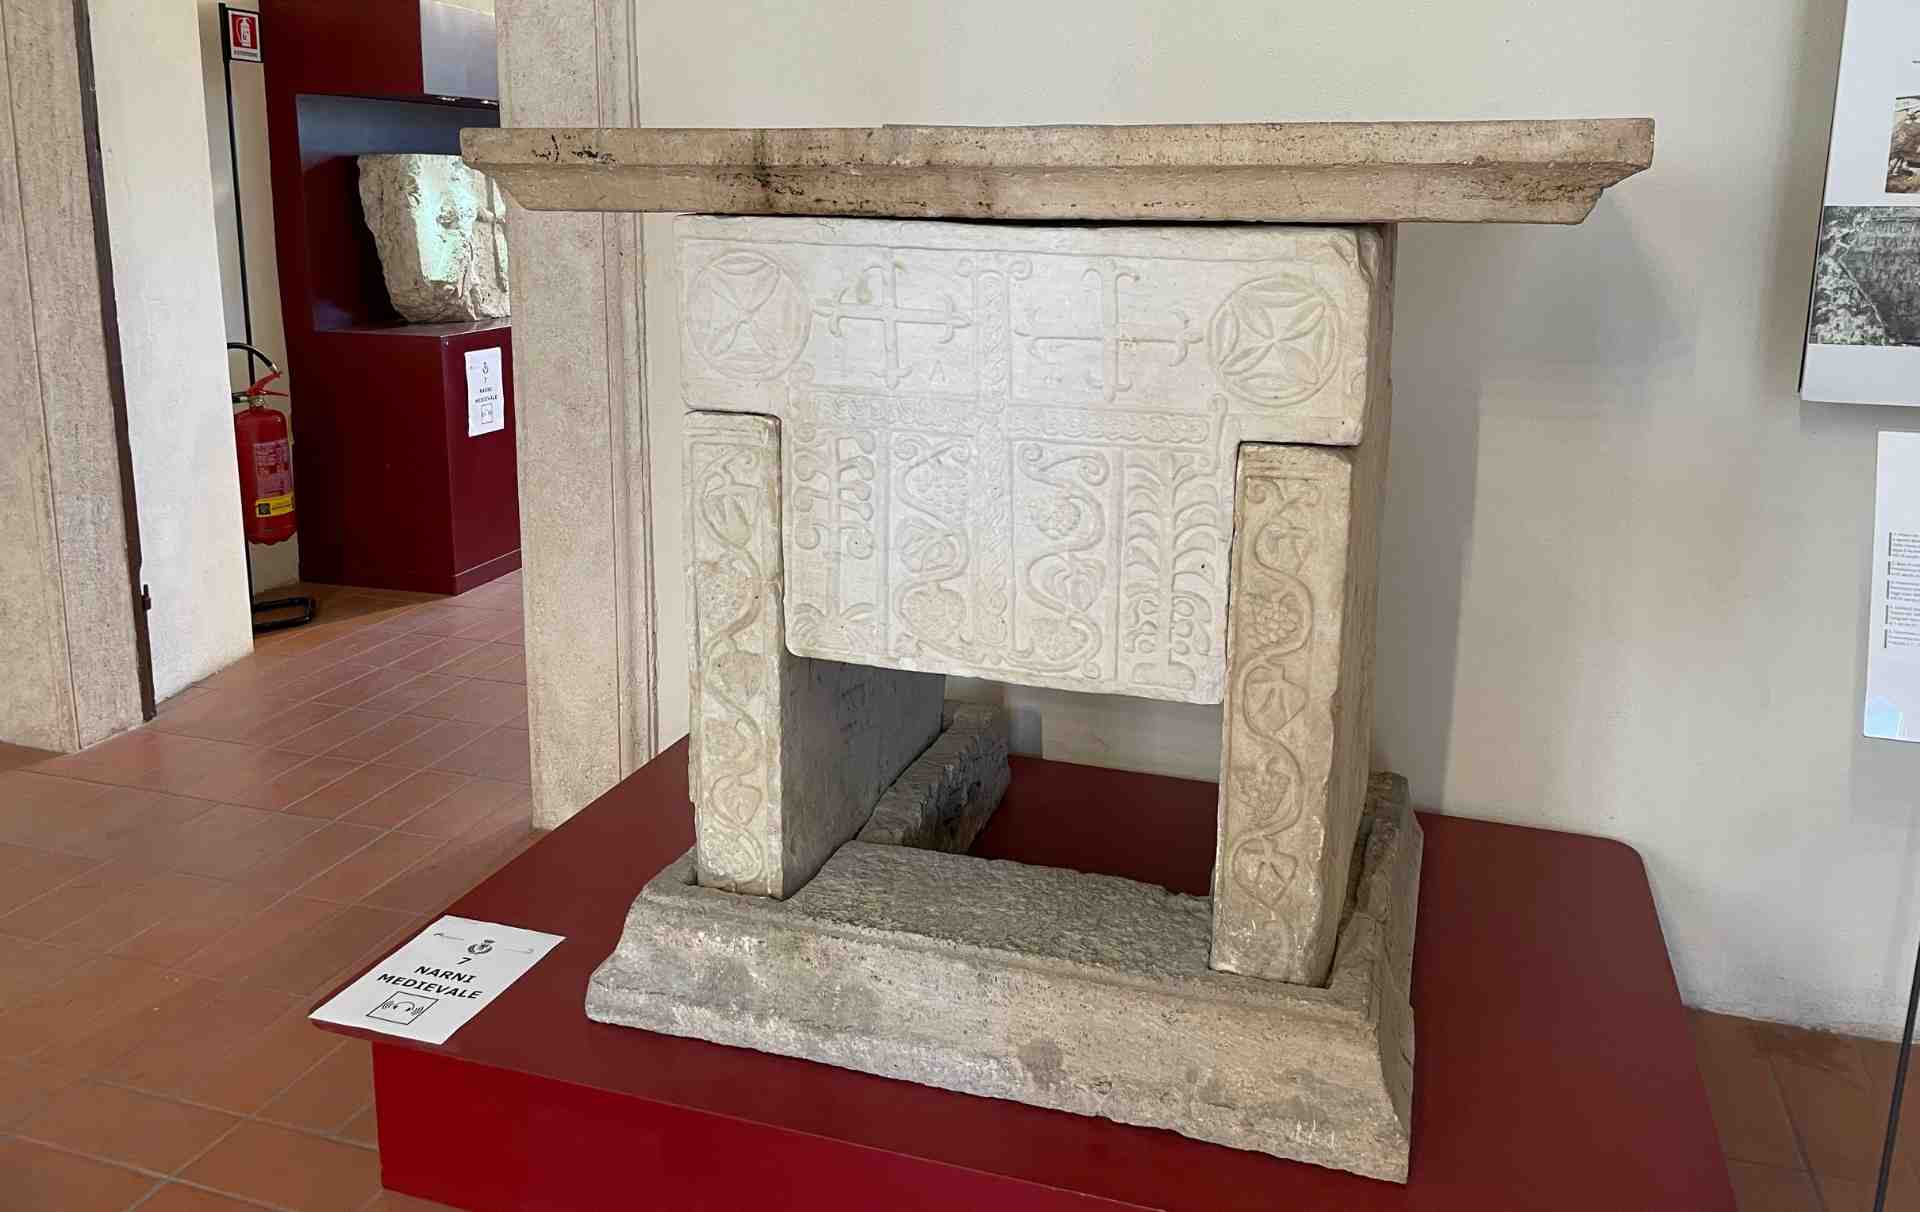 L'altare longobardo da San Martino a Taizzano oggi al Resti in bronzo di punte di lancia dalla tomba di Miriano oggi al Palazzo Eroli a Narni